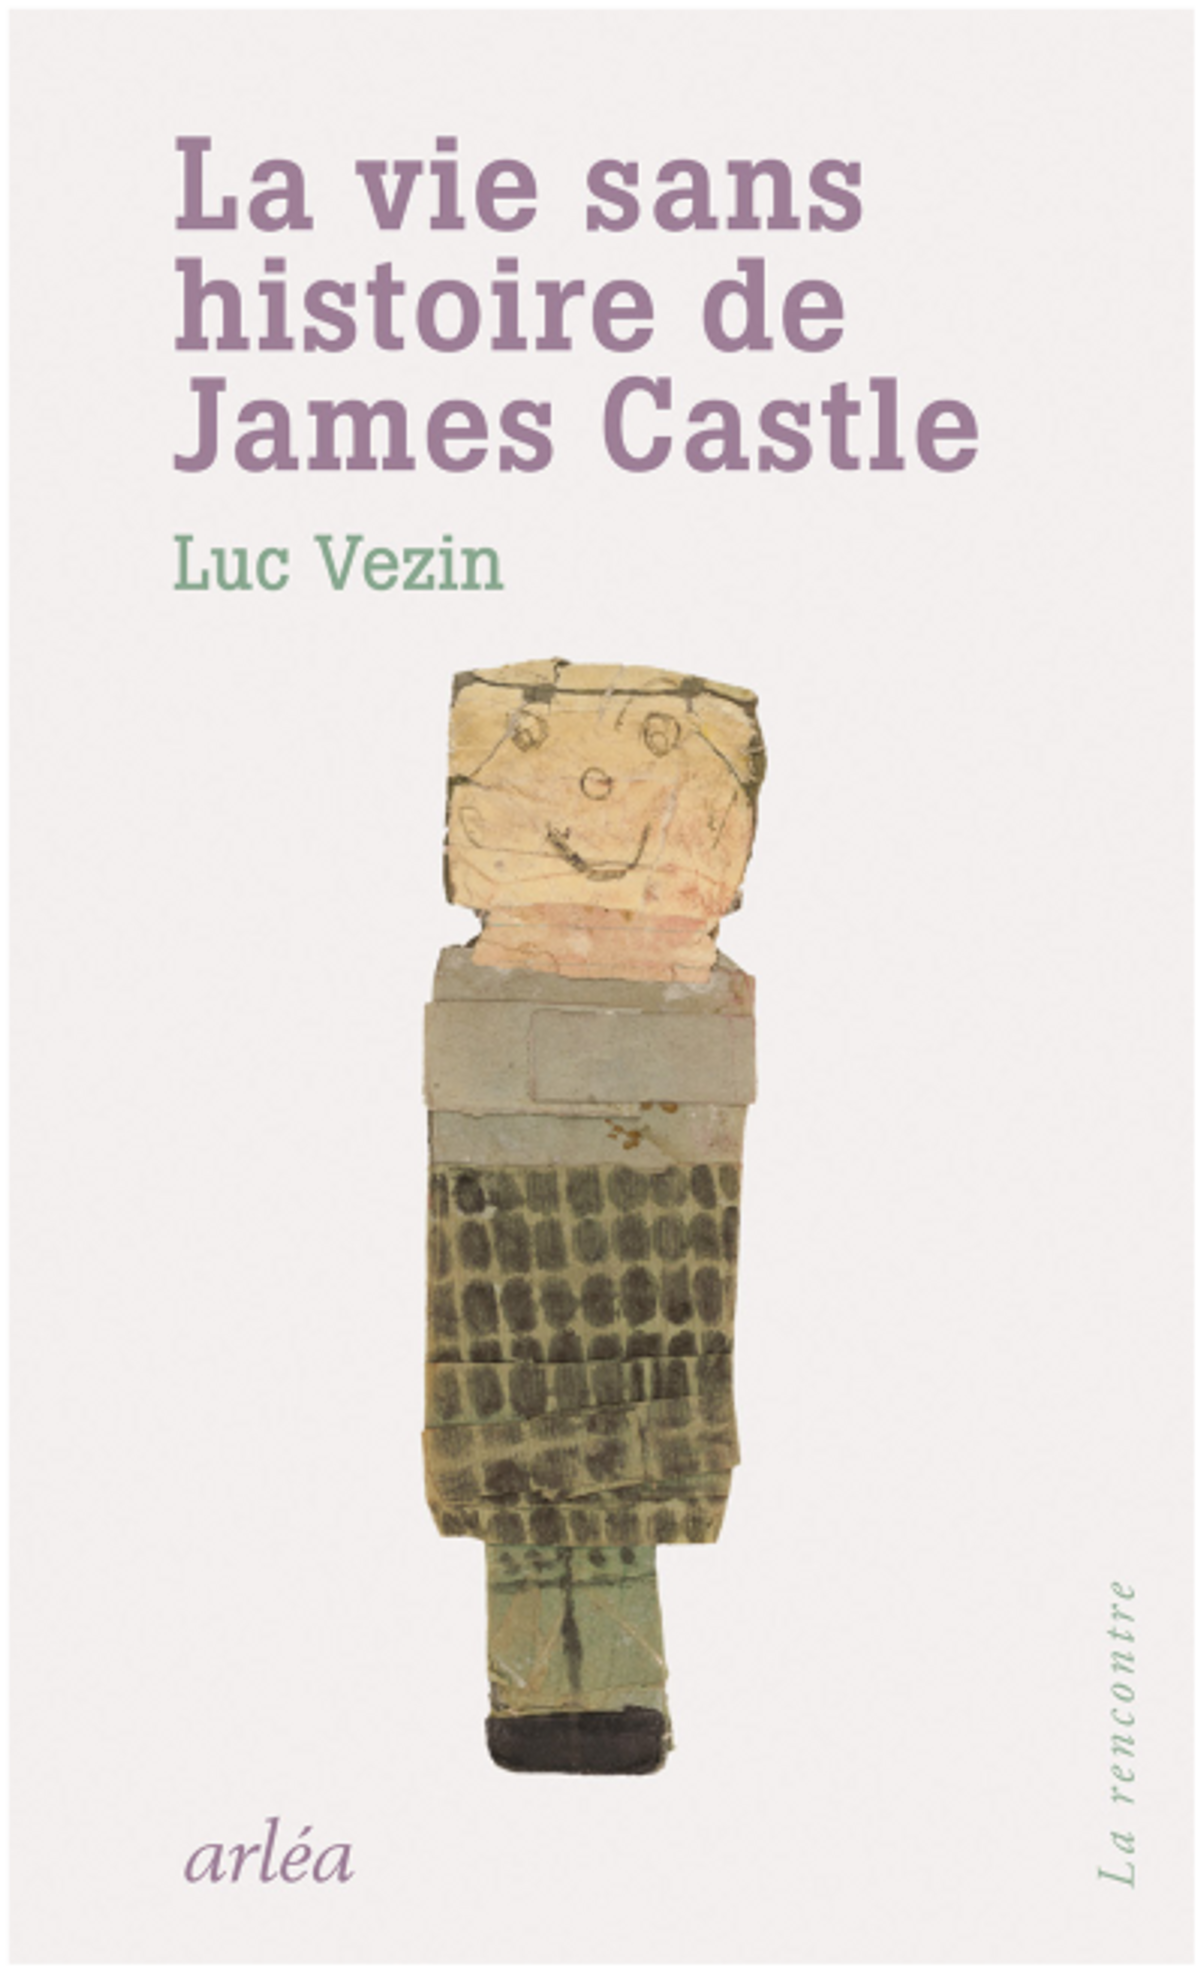 Luc Vezin, La Vie sans histoire de James Castle,

Paris, Arléa, 2022, 214 pages, 19 euros.